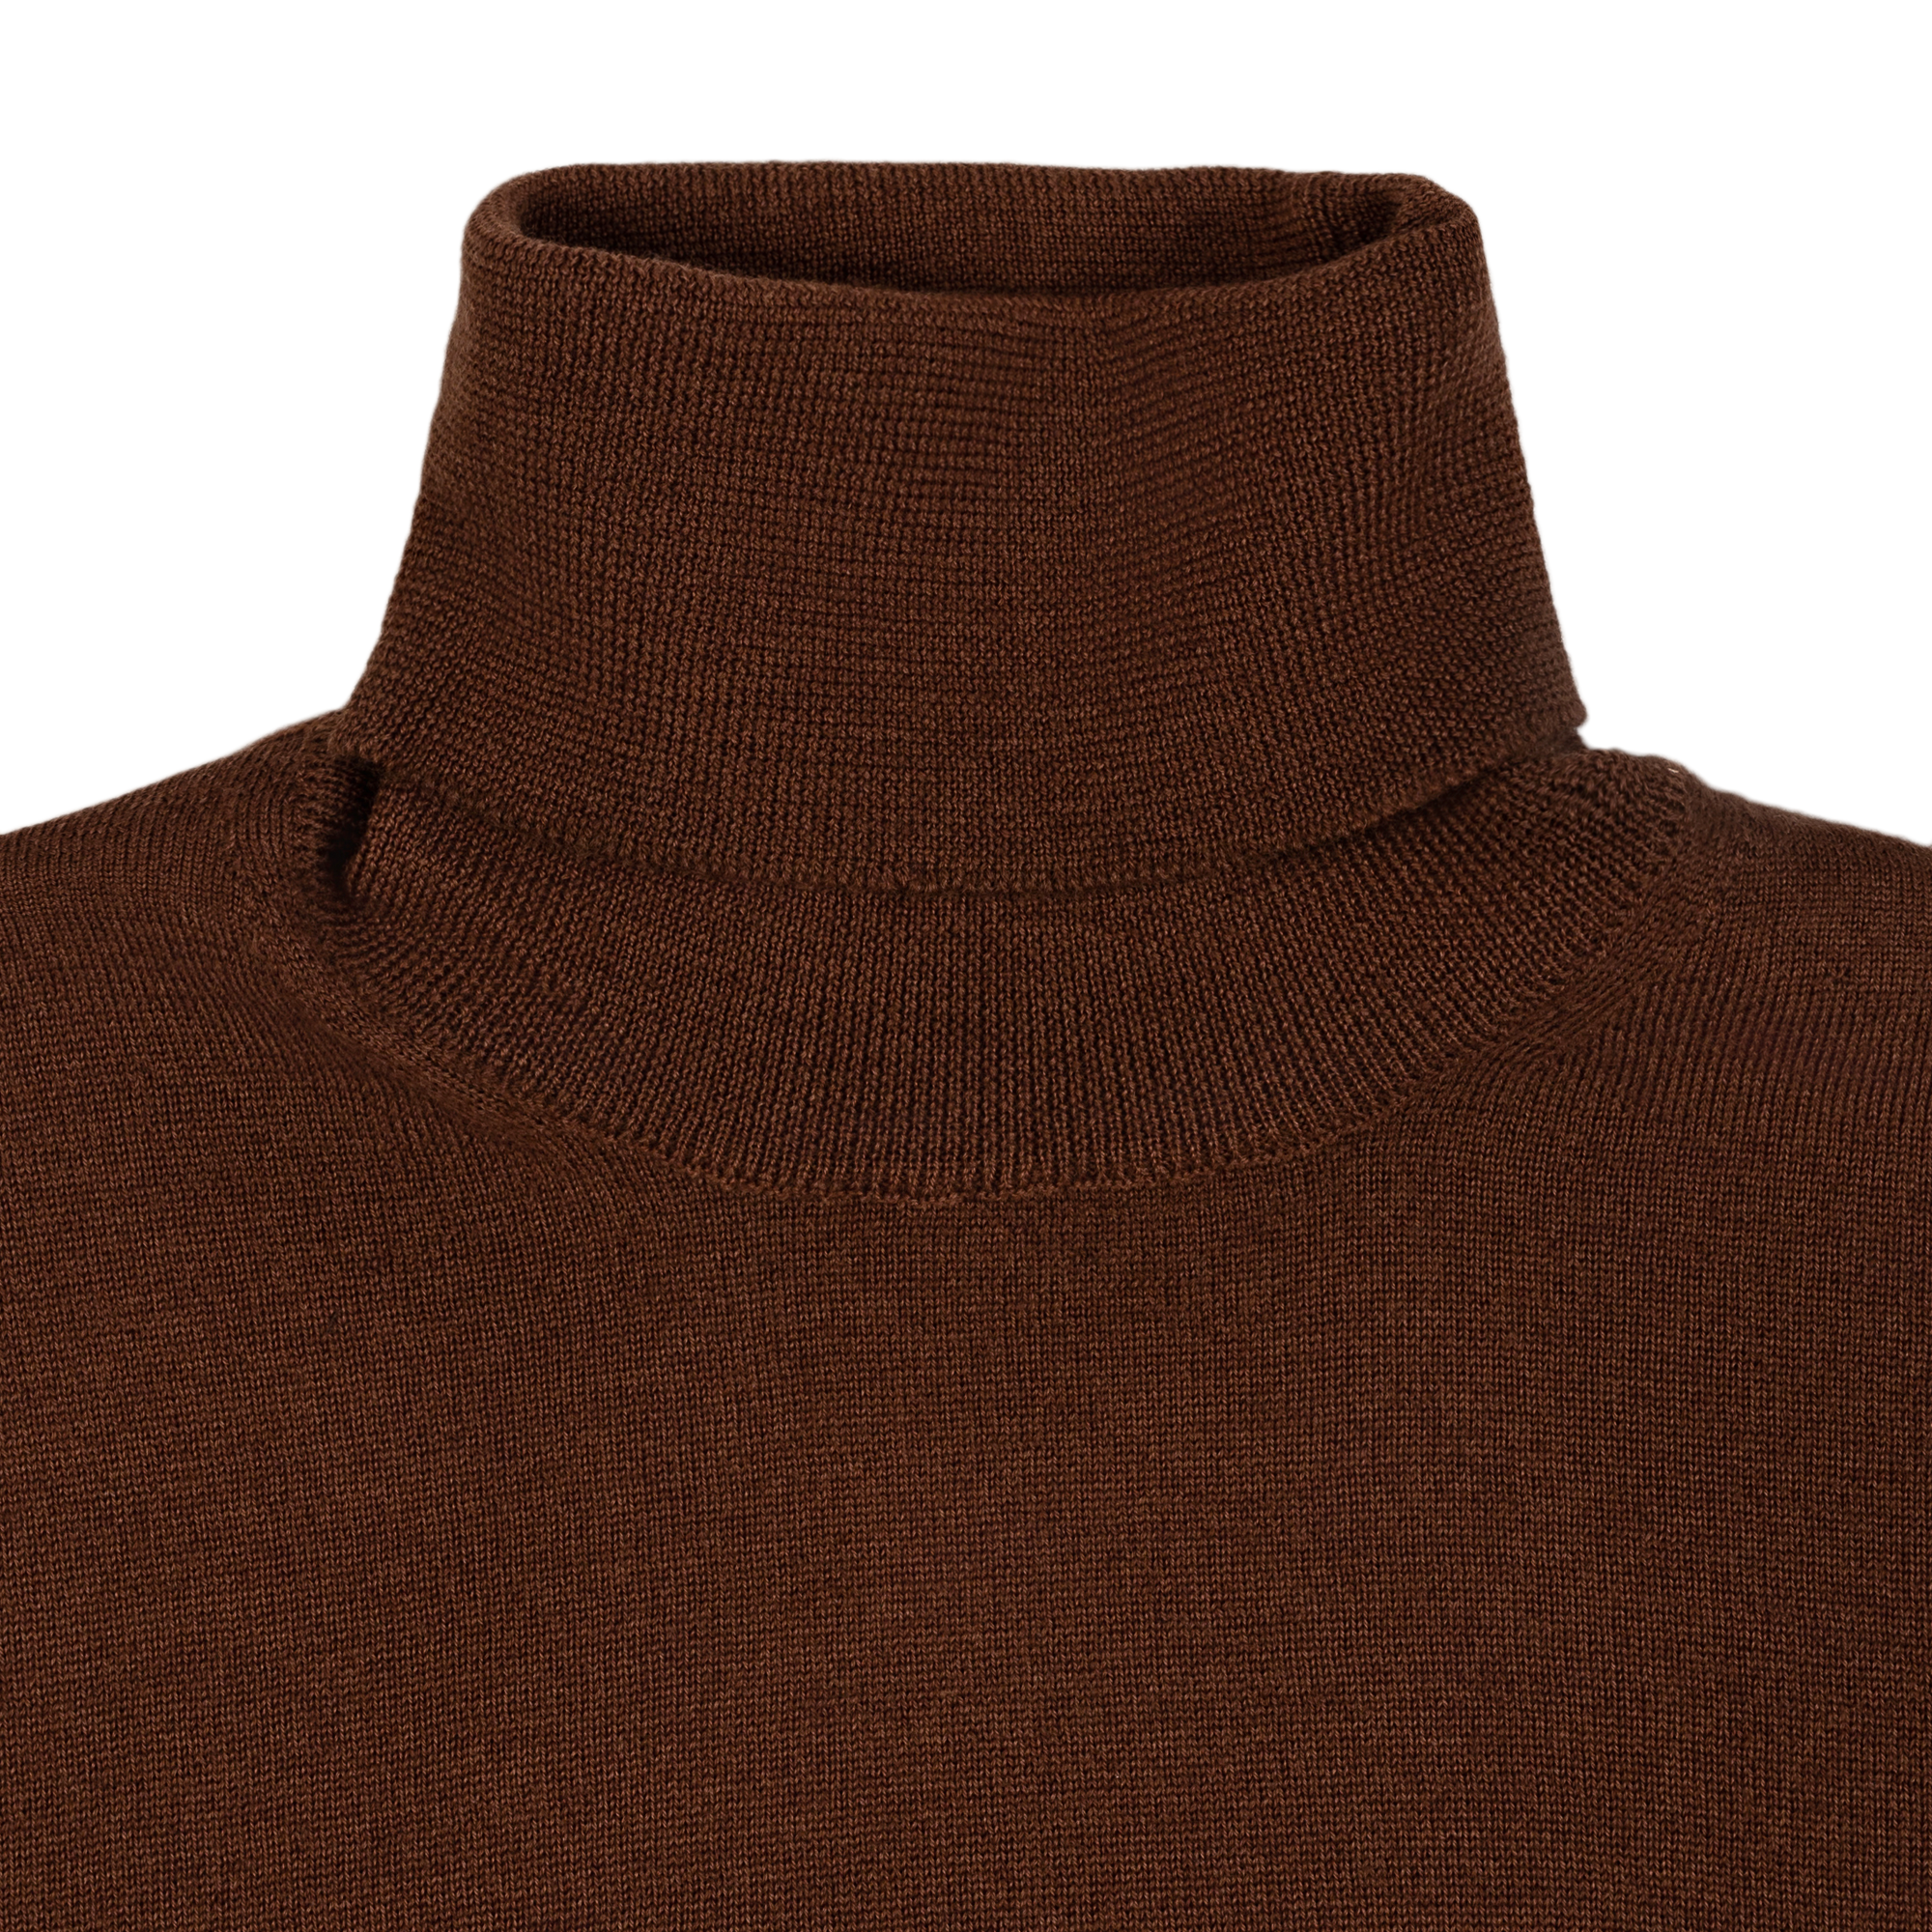 Men's Brown Turtleneck Sweater